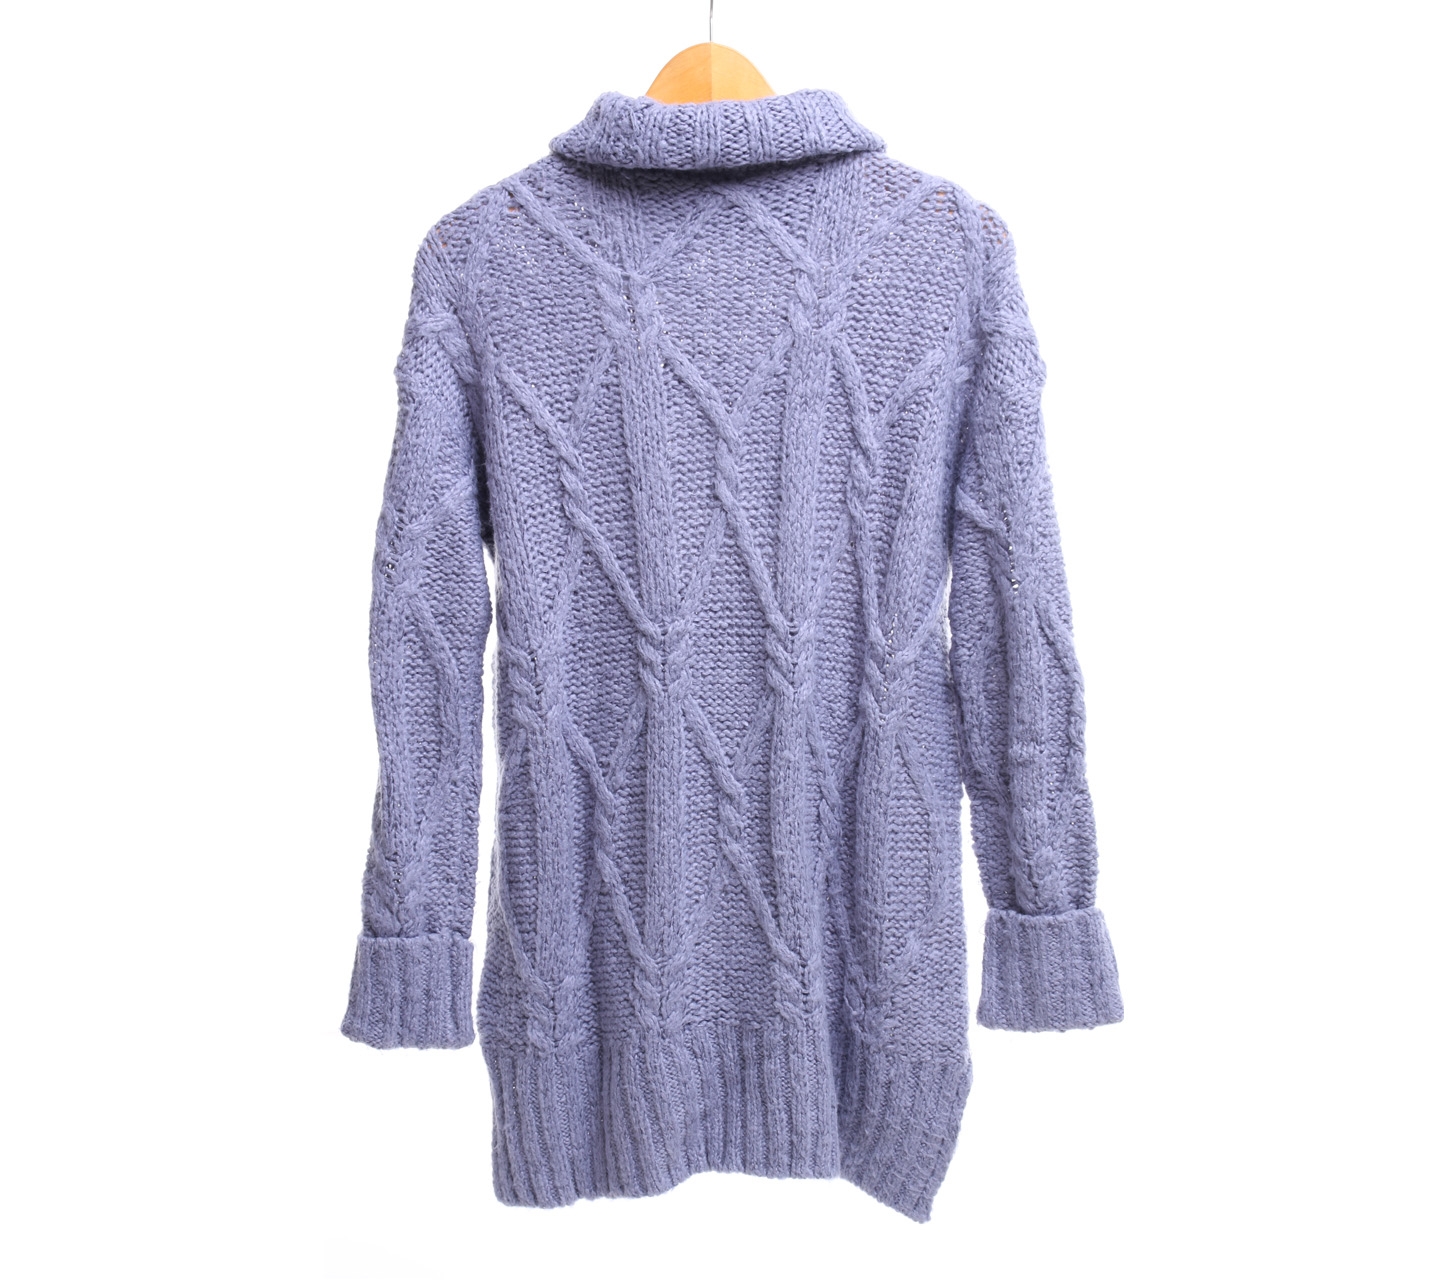 H&M Grey Wool Turtleneck Sweater